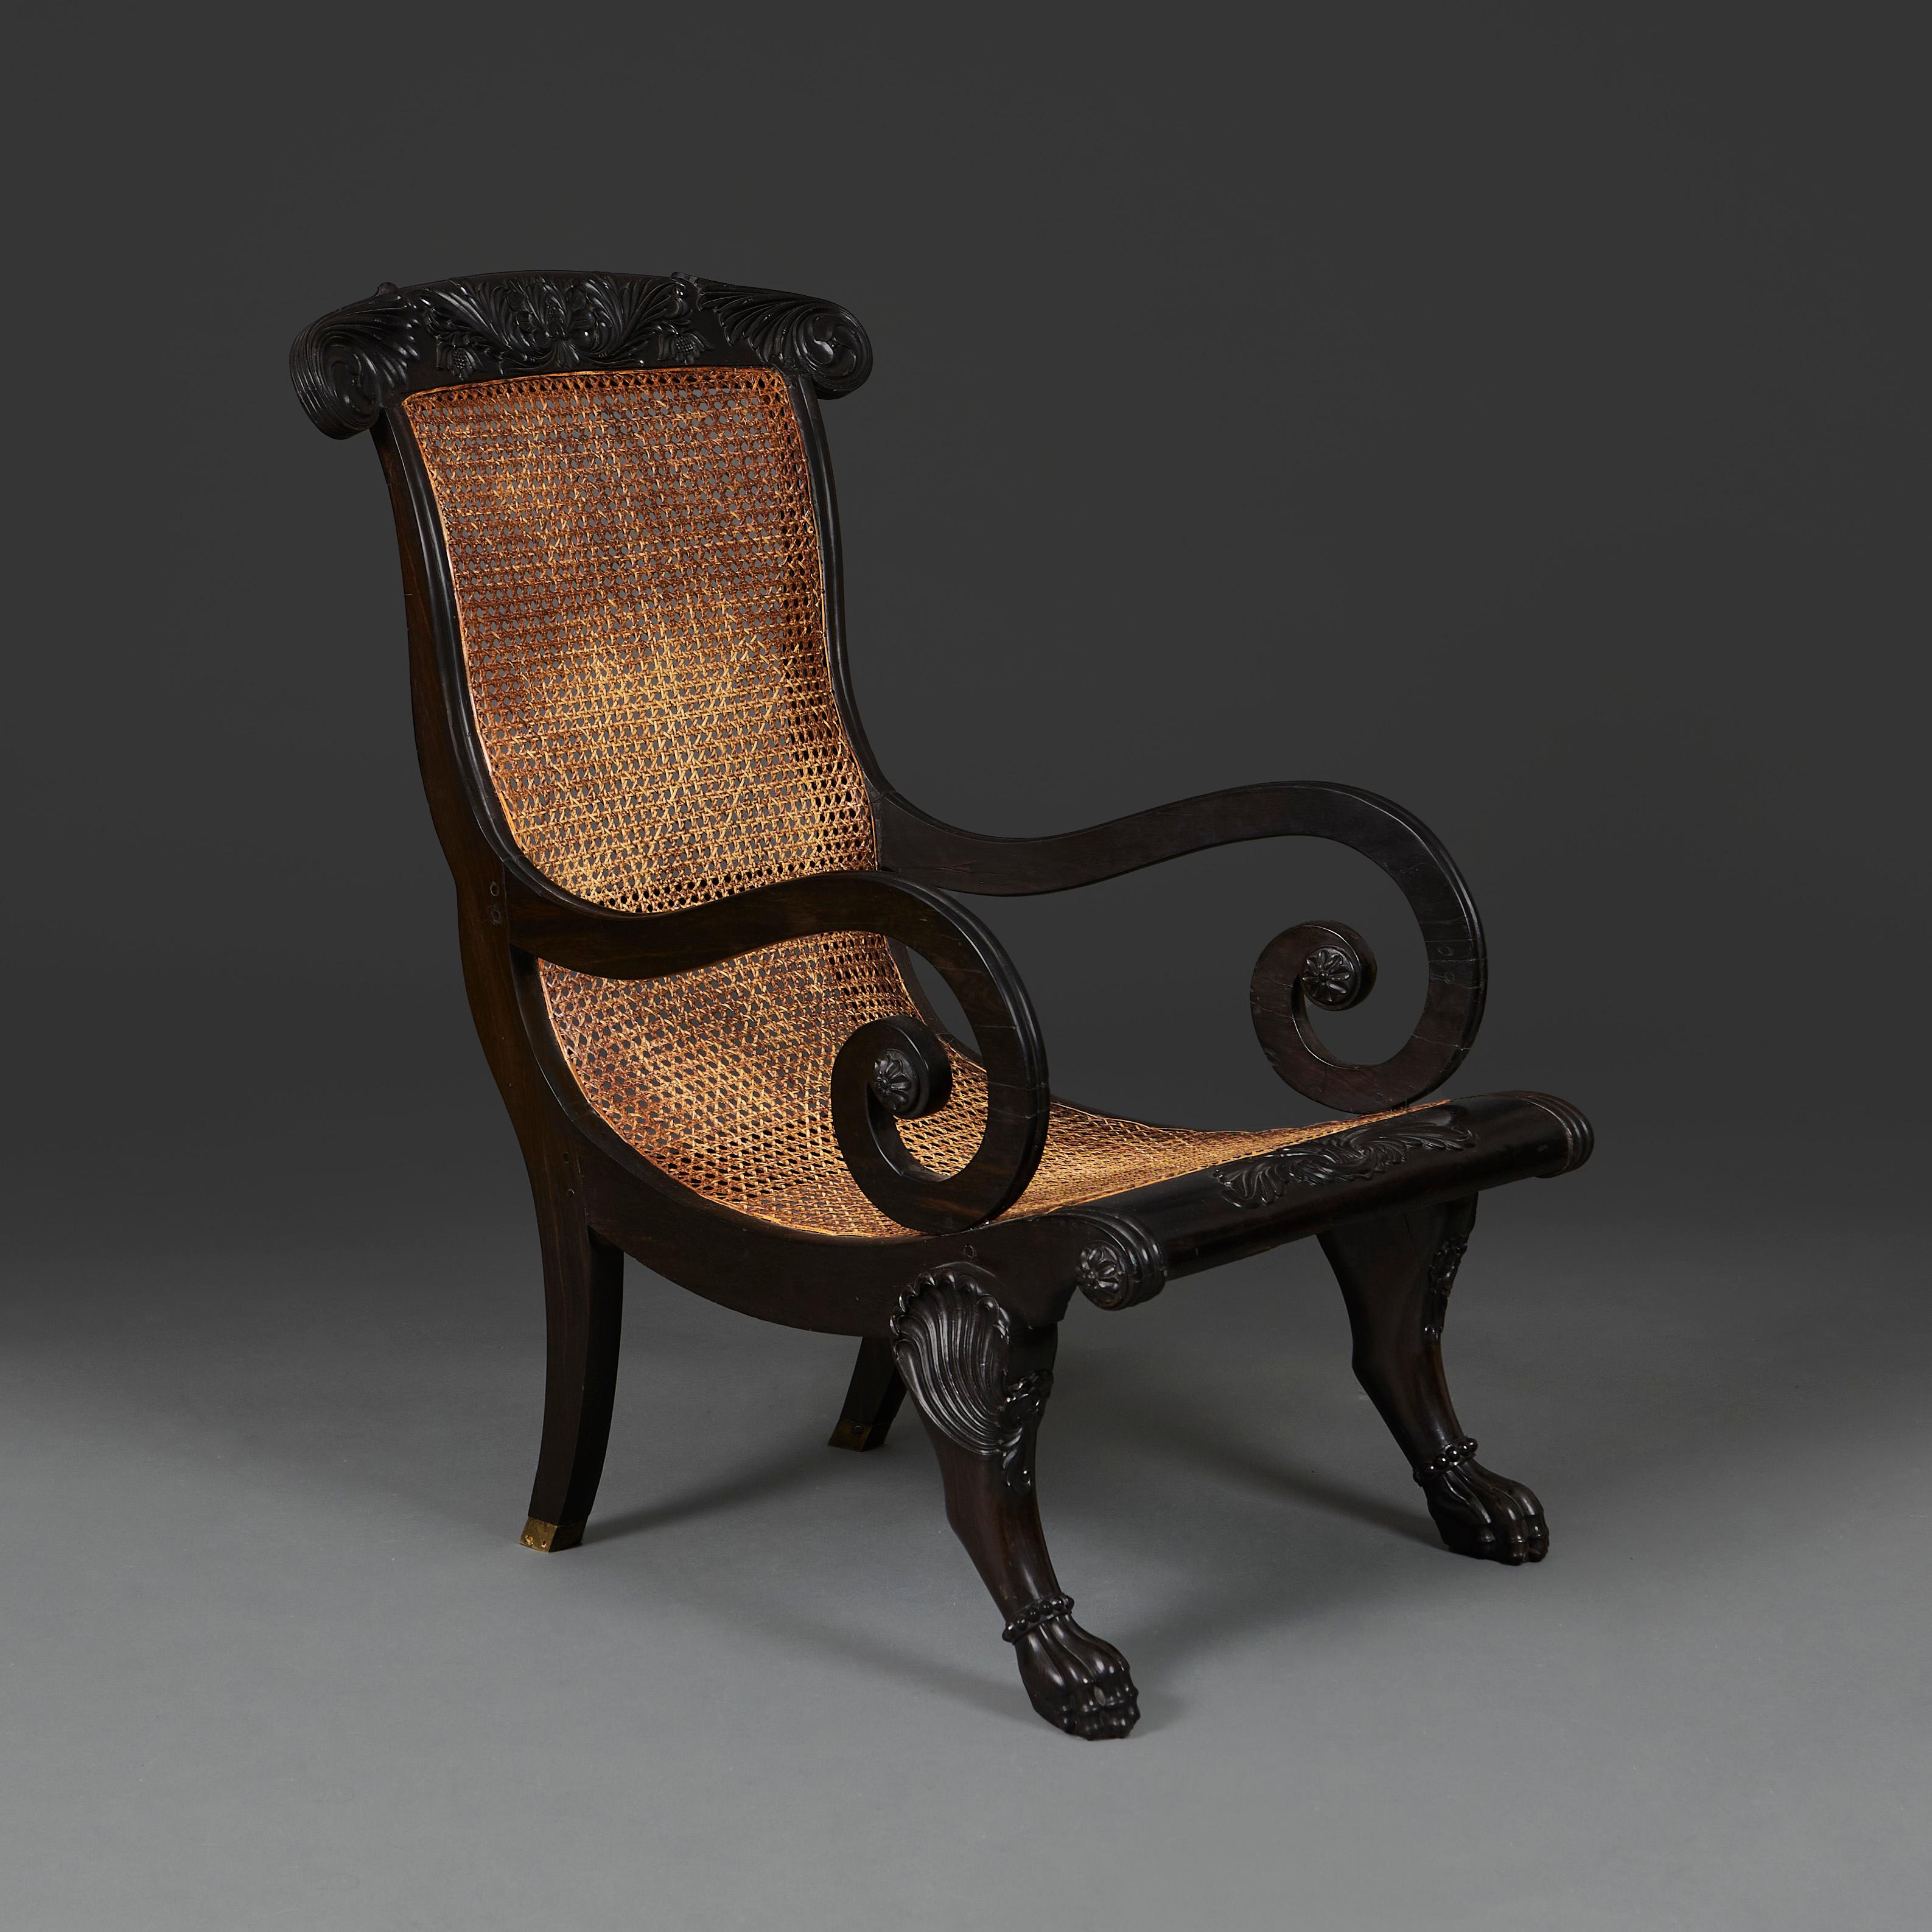 Sri-Lanka, vers 1820

Exceptionnelle chaise de planteur anglo-cinghalaise du milieu du XIXe siècle, en ébène massif, avec une assise à cannelures et des accoudoirs à volutes, la barre d'assise et le haut du dossier étant sculptés de motifs